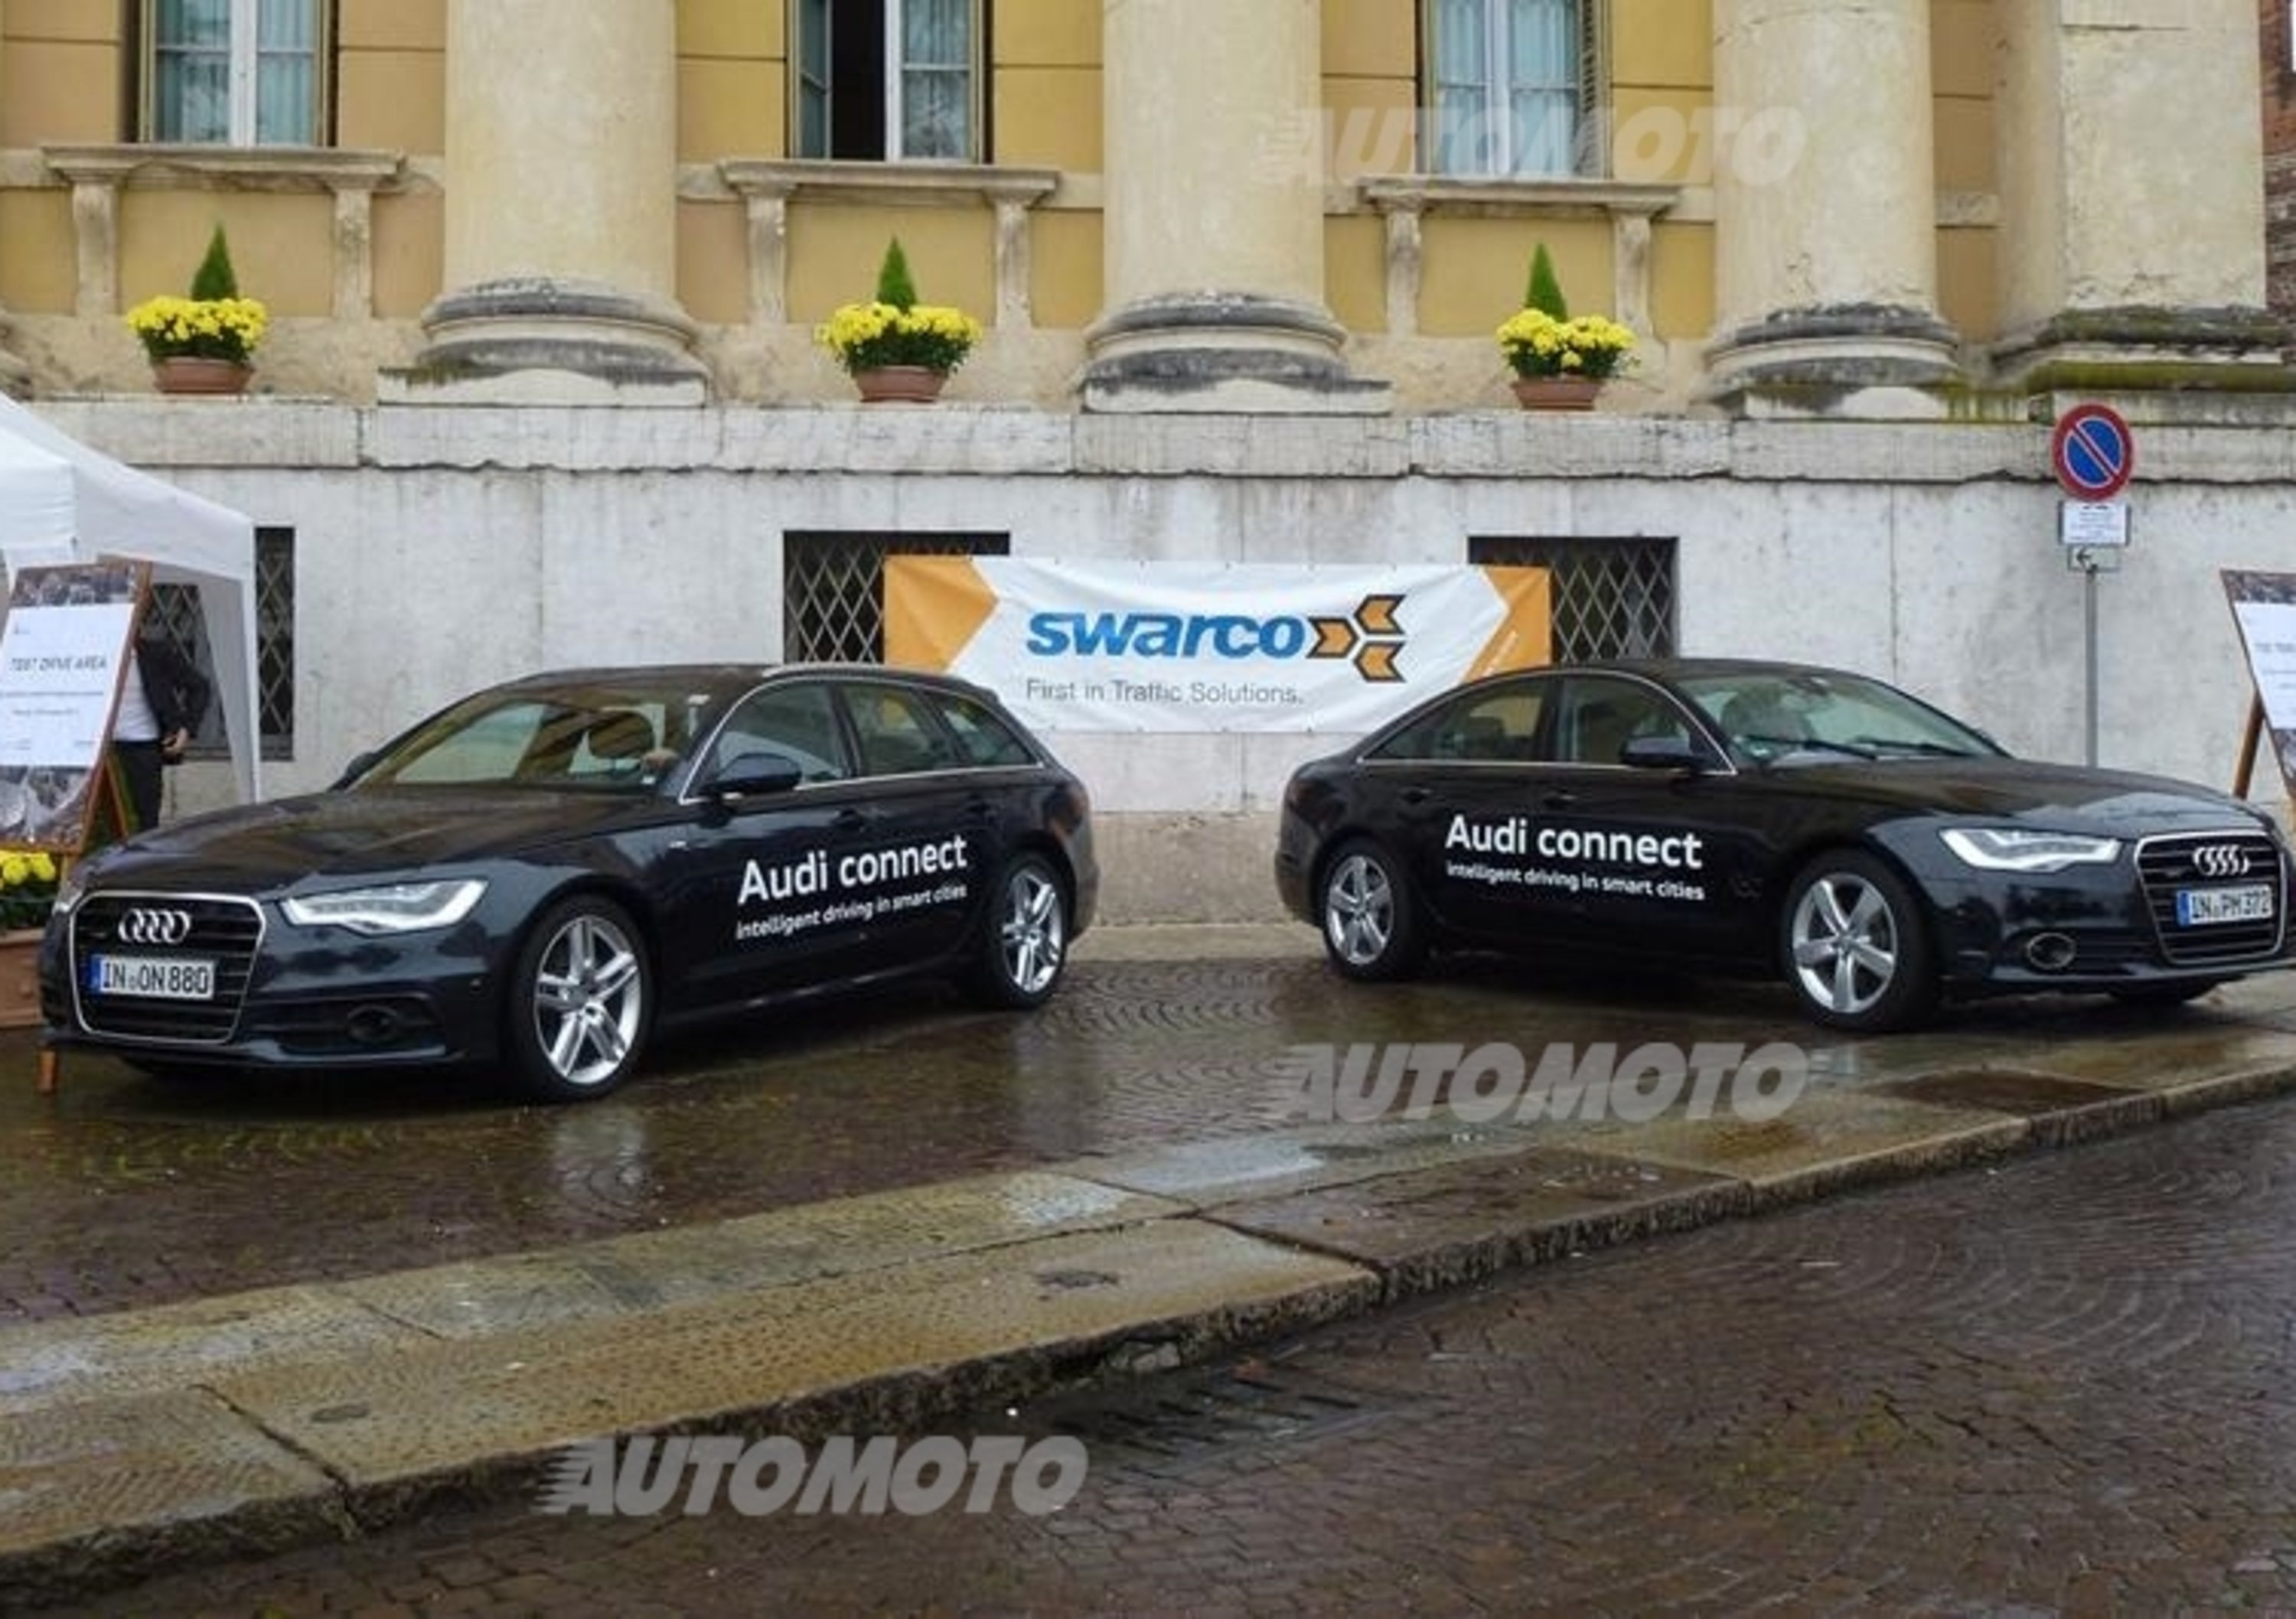 Audi, Swarco e Verona insieme per la prima Smart City italiana